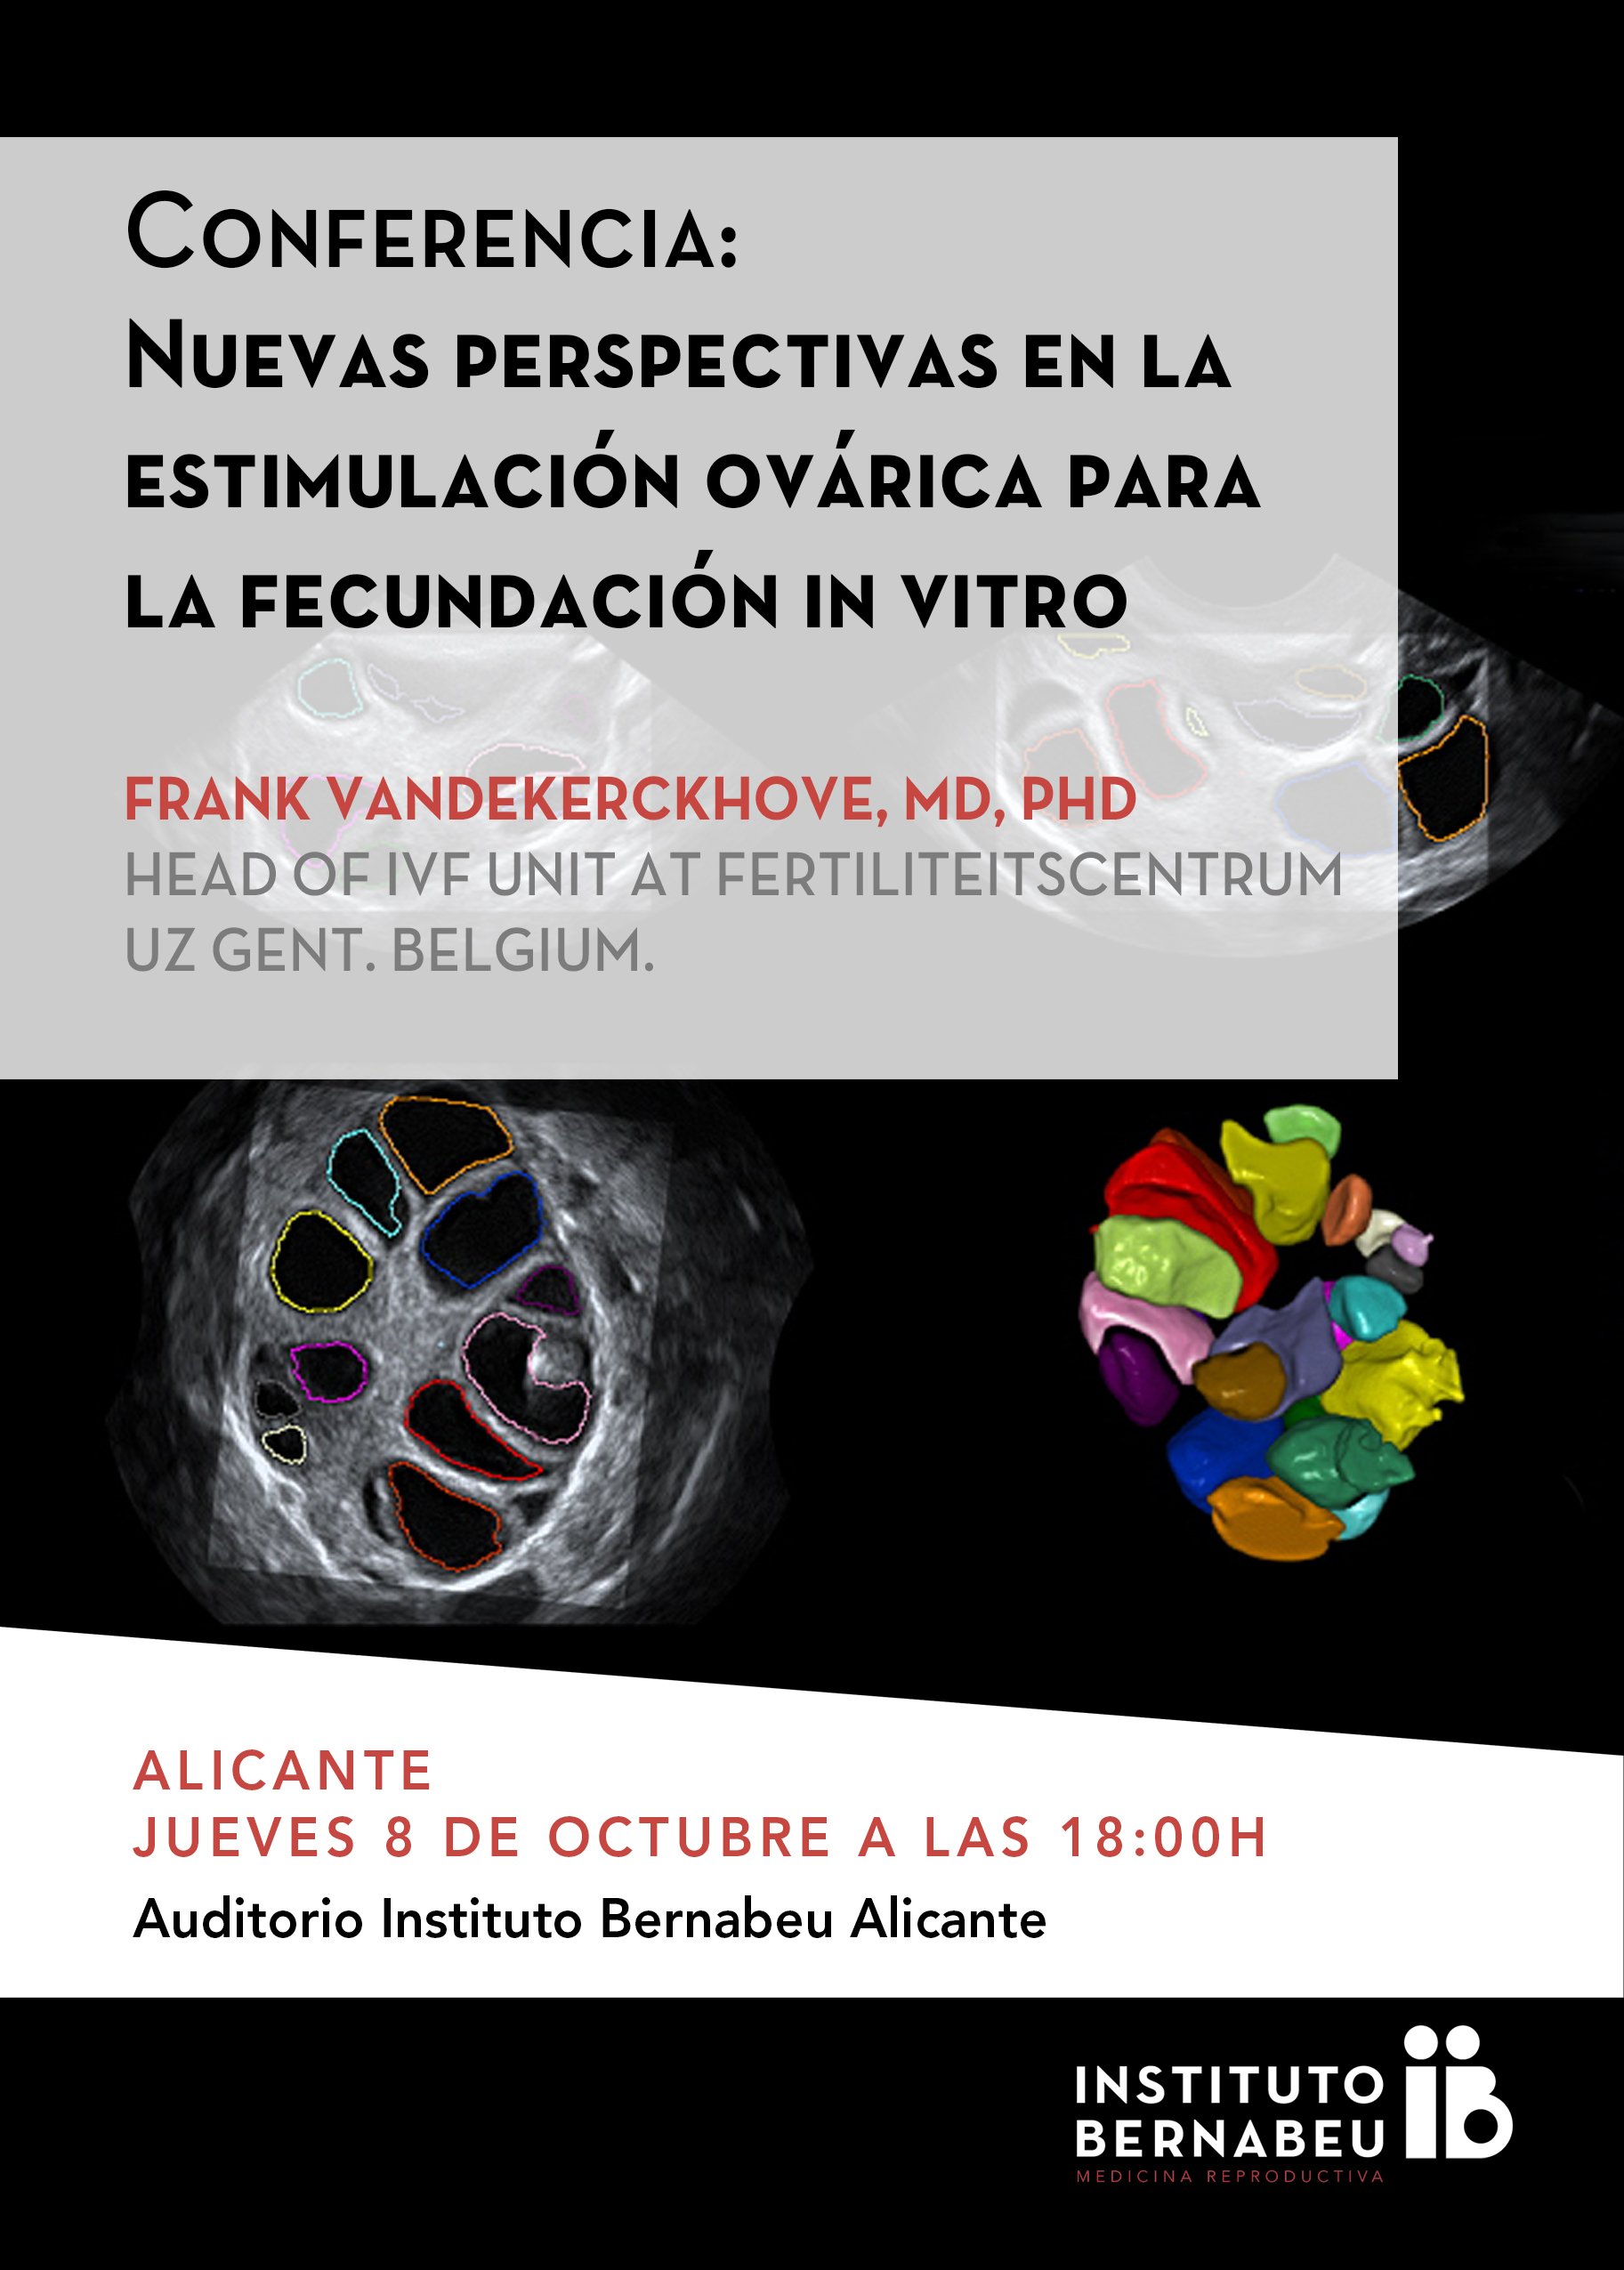 Conferencia “Nuevas perspectivas en la estimulación ovárica para la fecundación in vitro”.